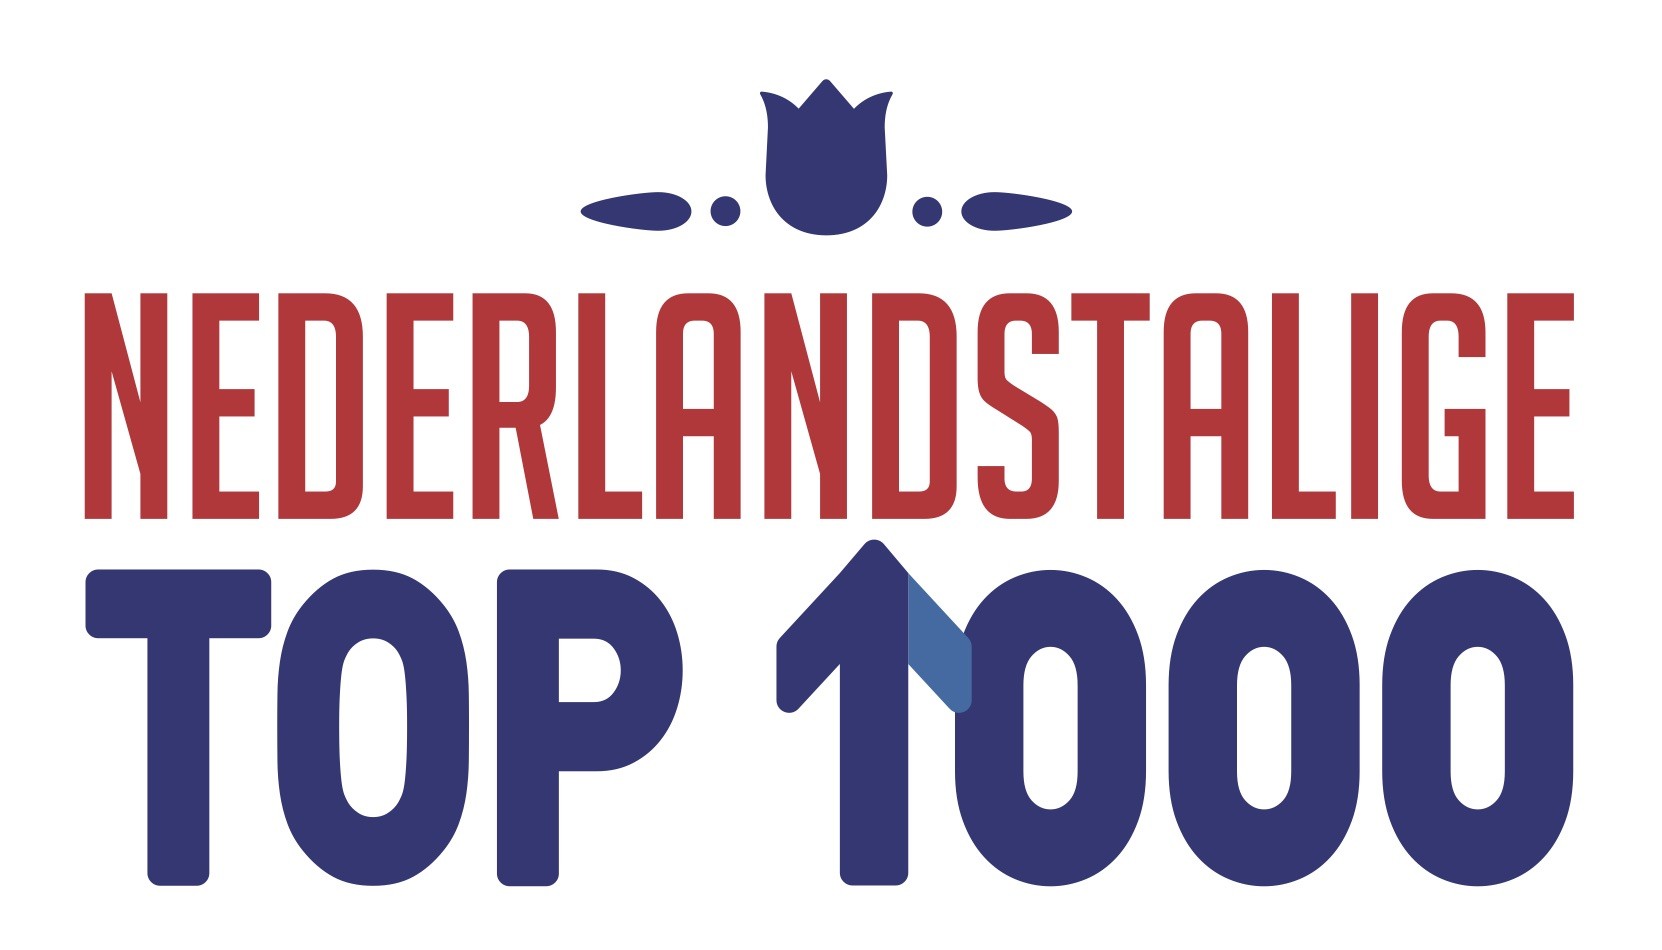 'Kleine jongen' van André Hazes op nummer 1 in Nederlandstalige Top 1000